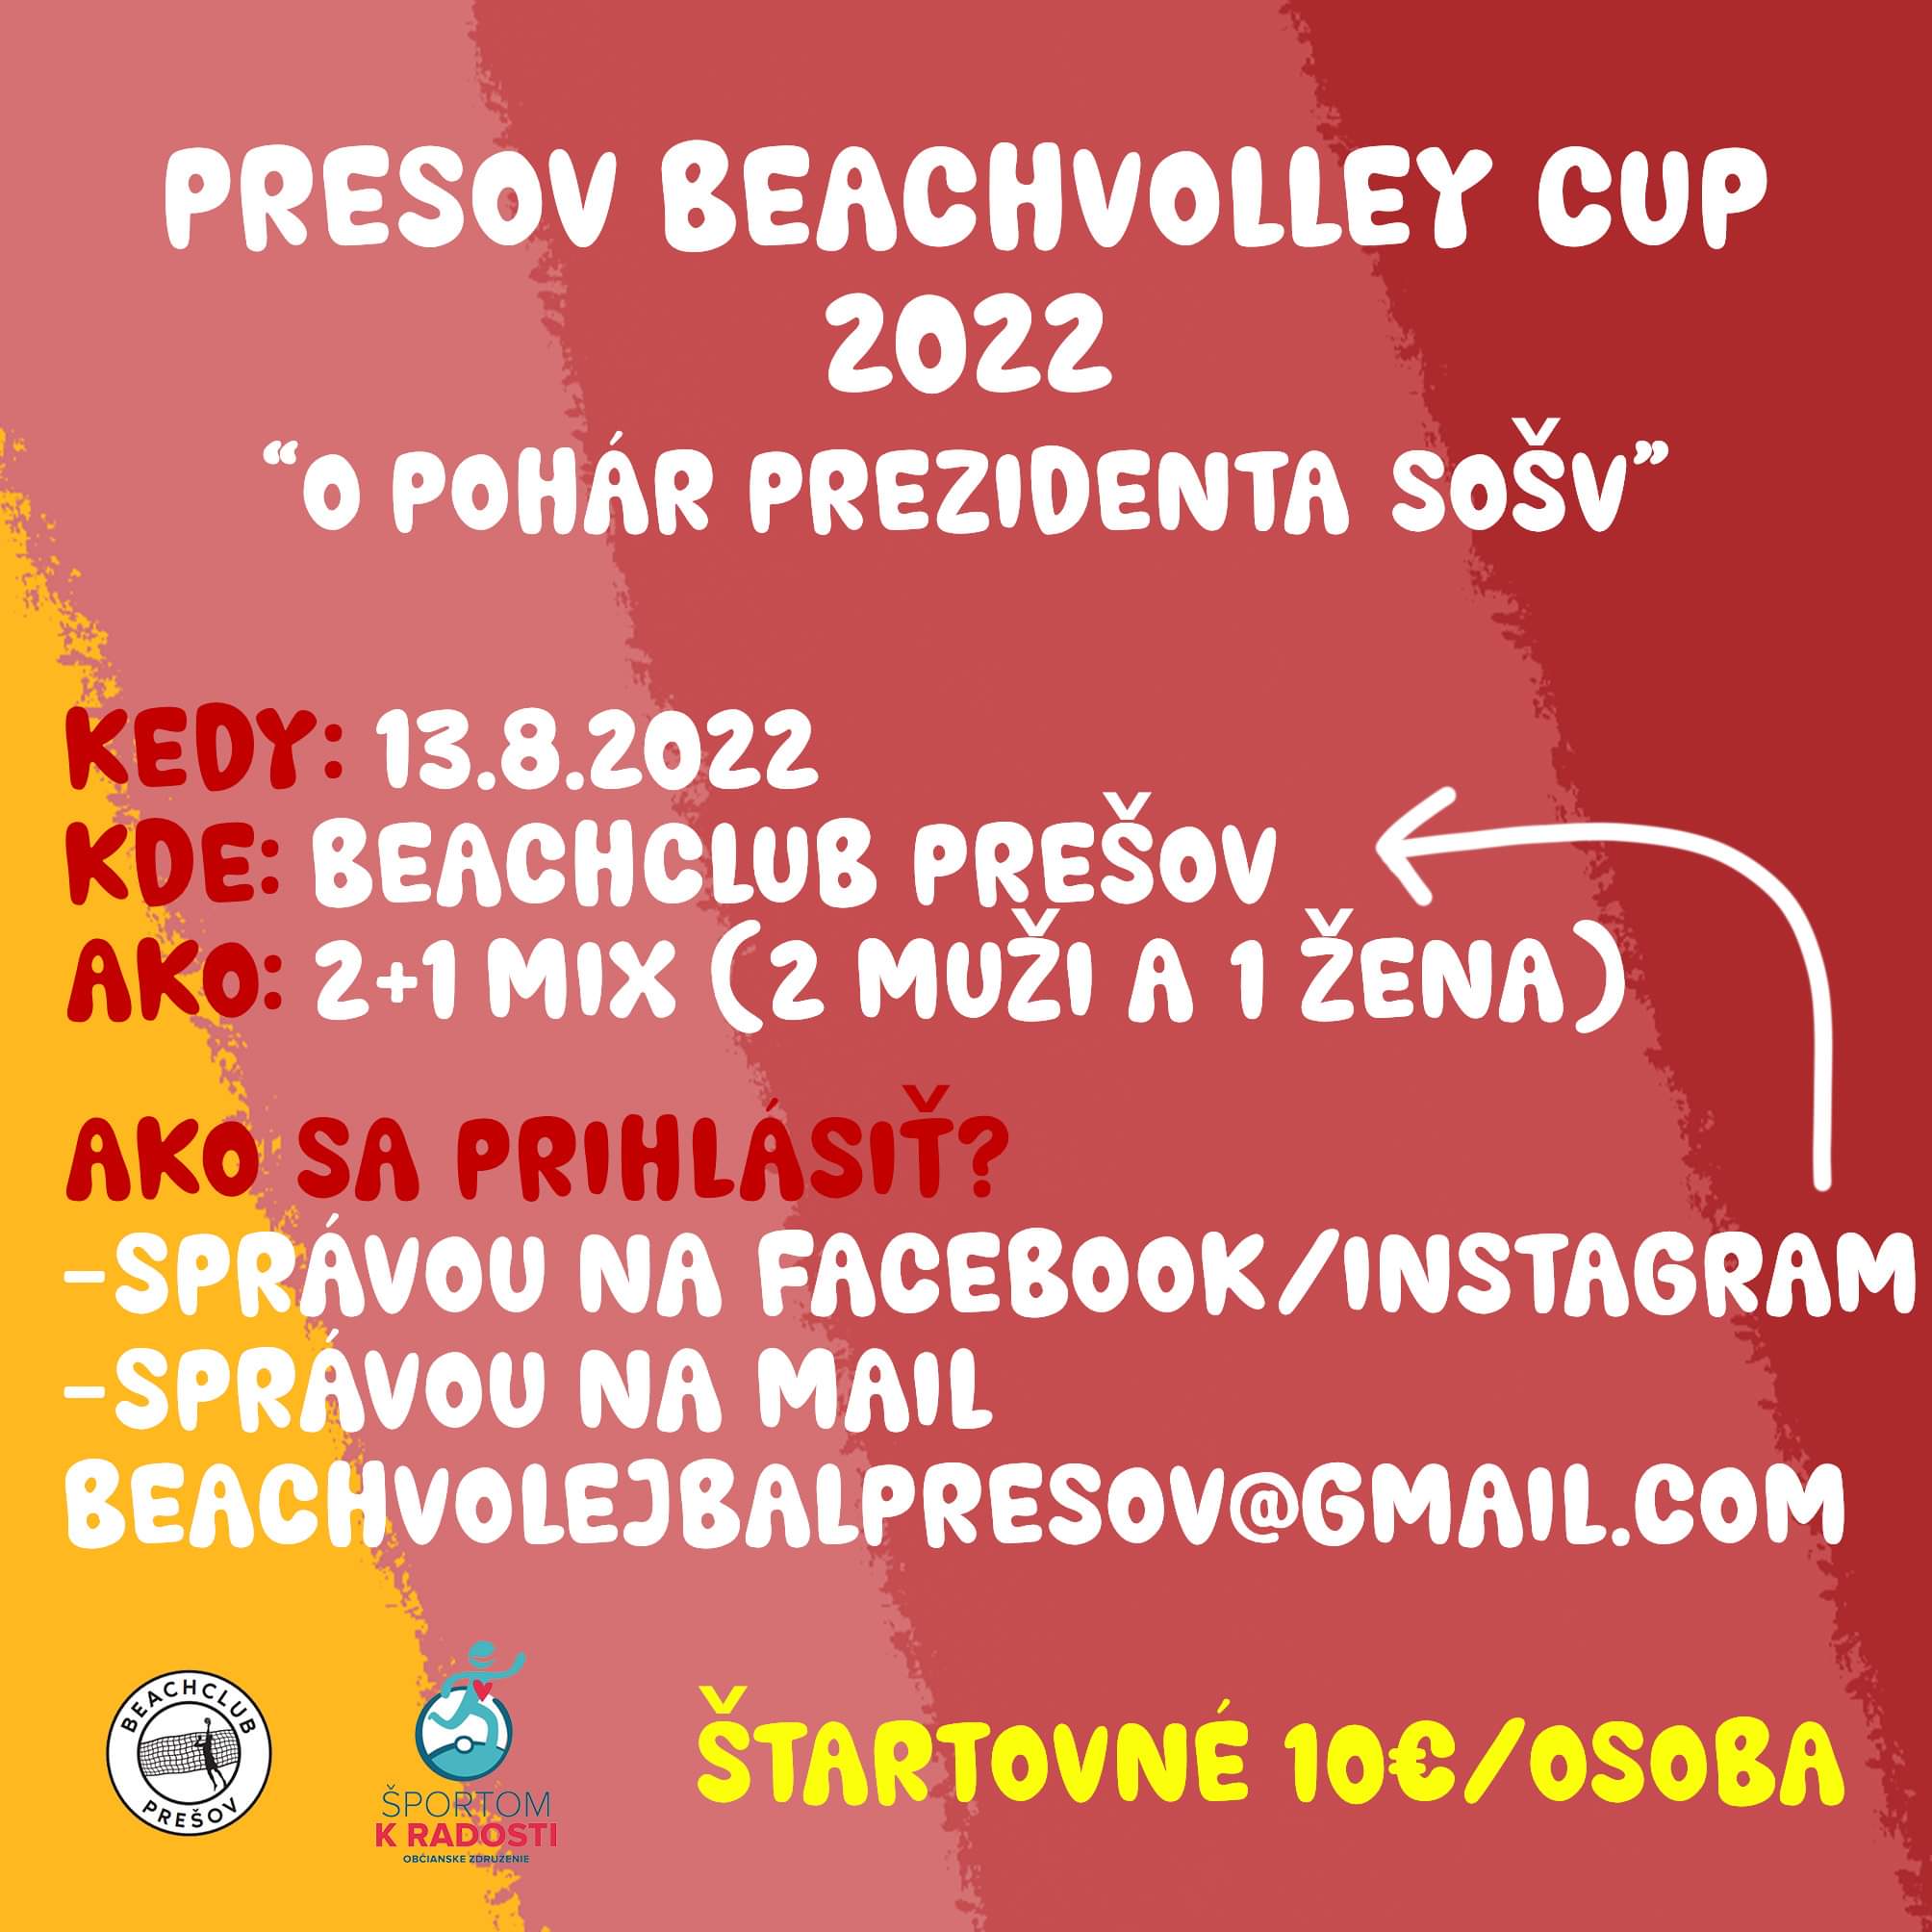 PRESOV BEACHVOLLEY CUP 2022 Beachclub Prešov